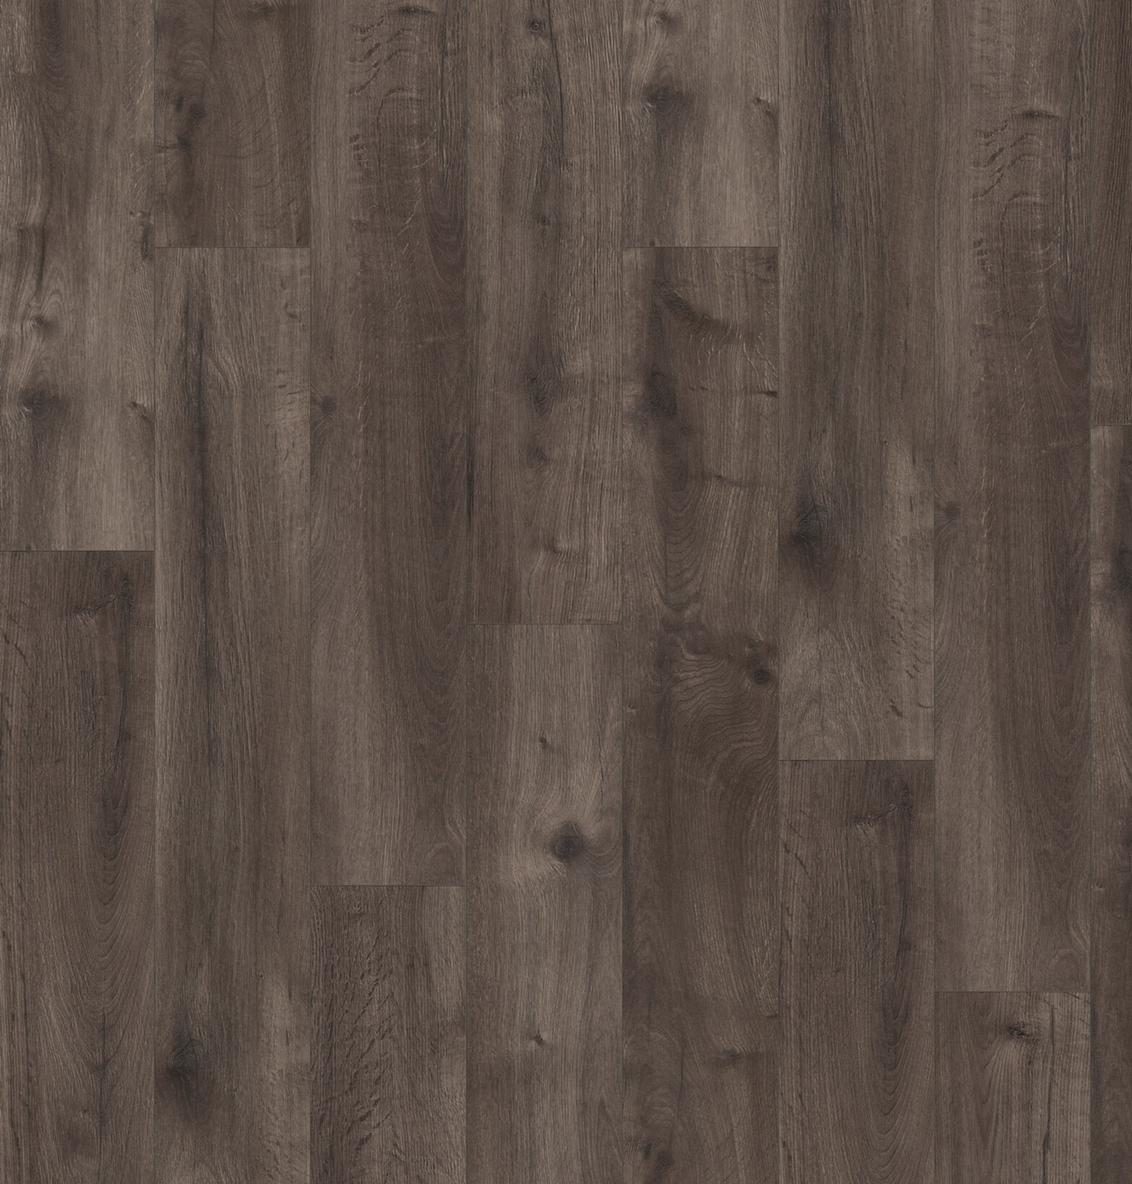 Baelea Nature Woods Forest Dark Grey Oak 12mm Laminate Flooring